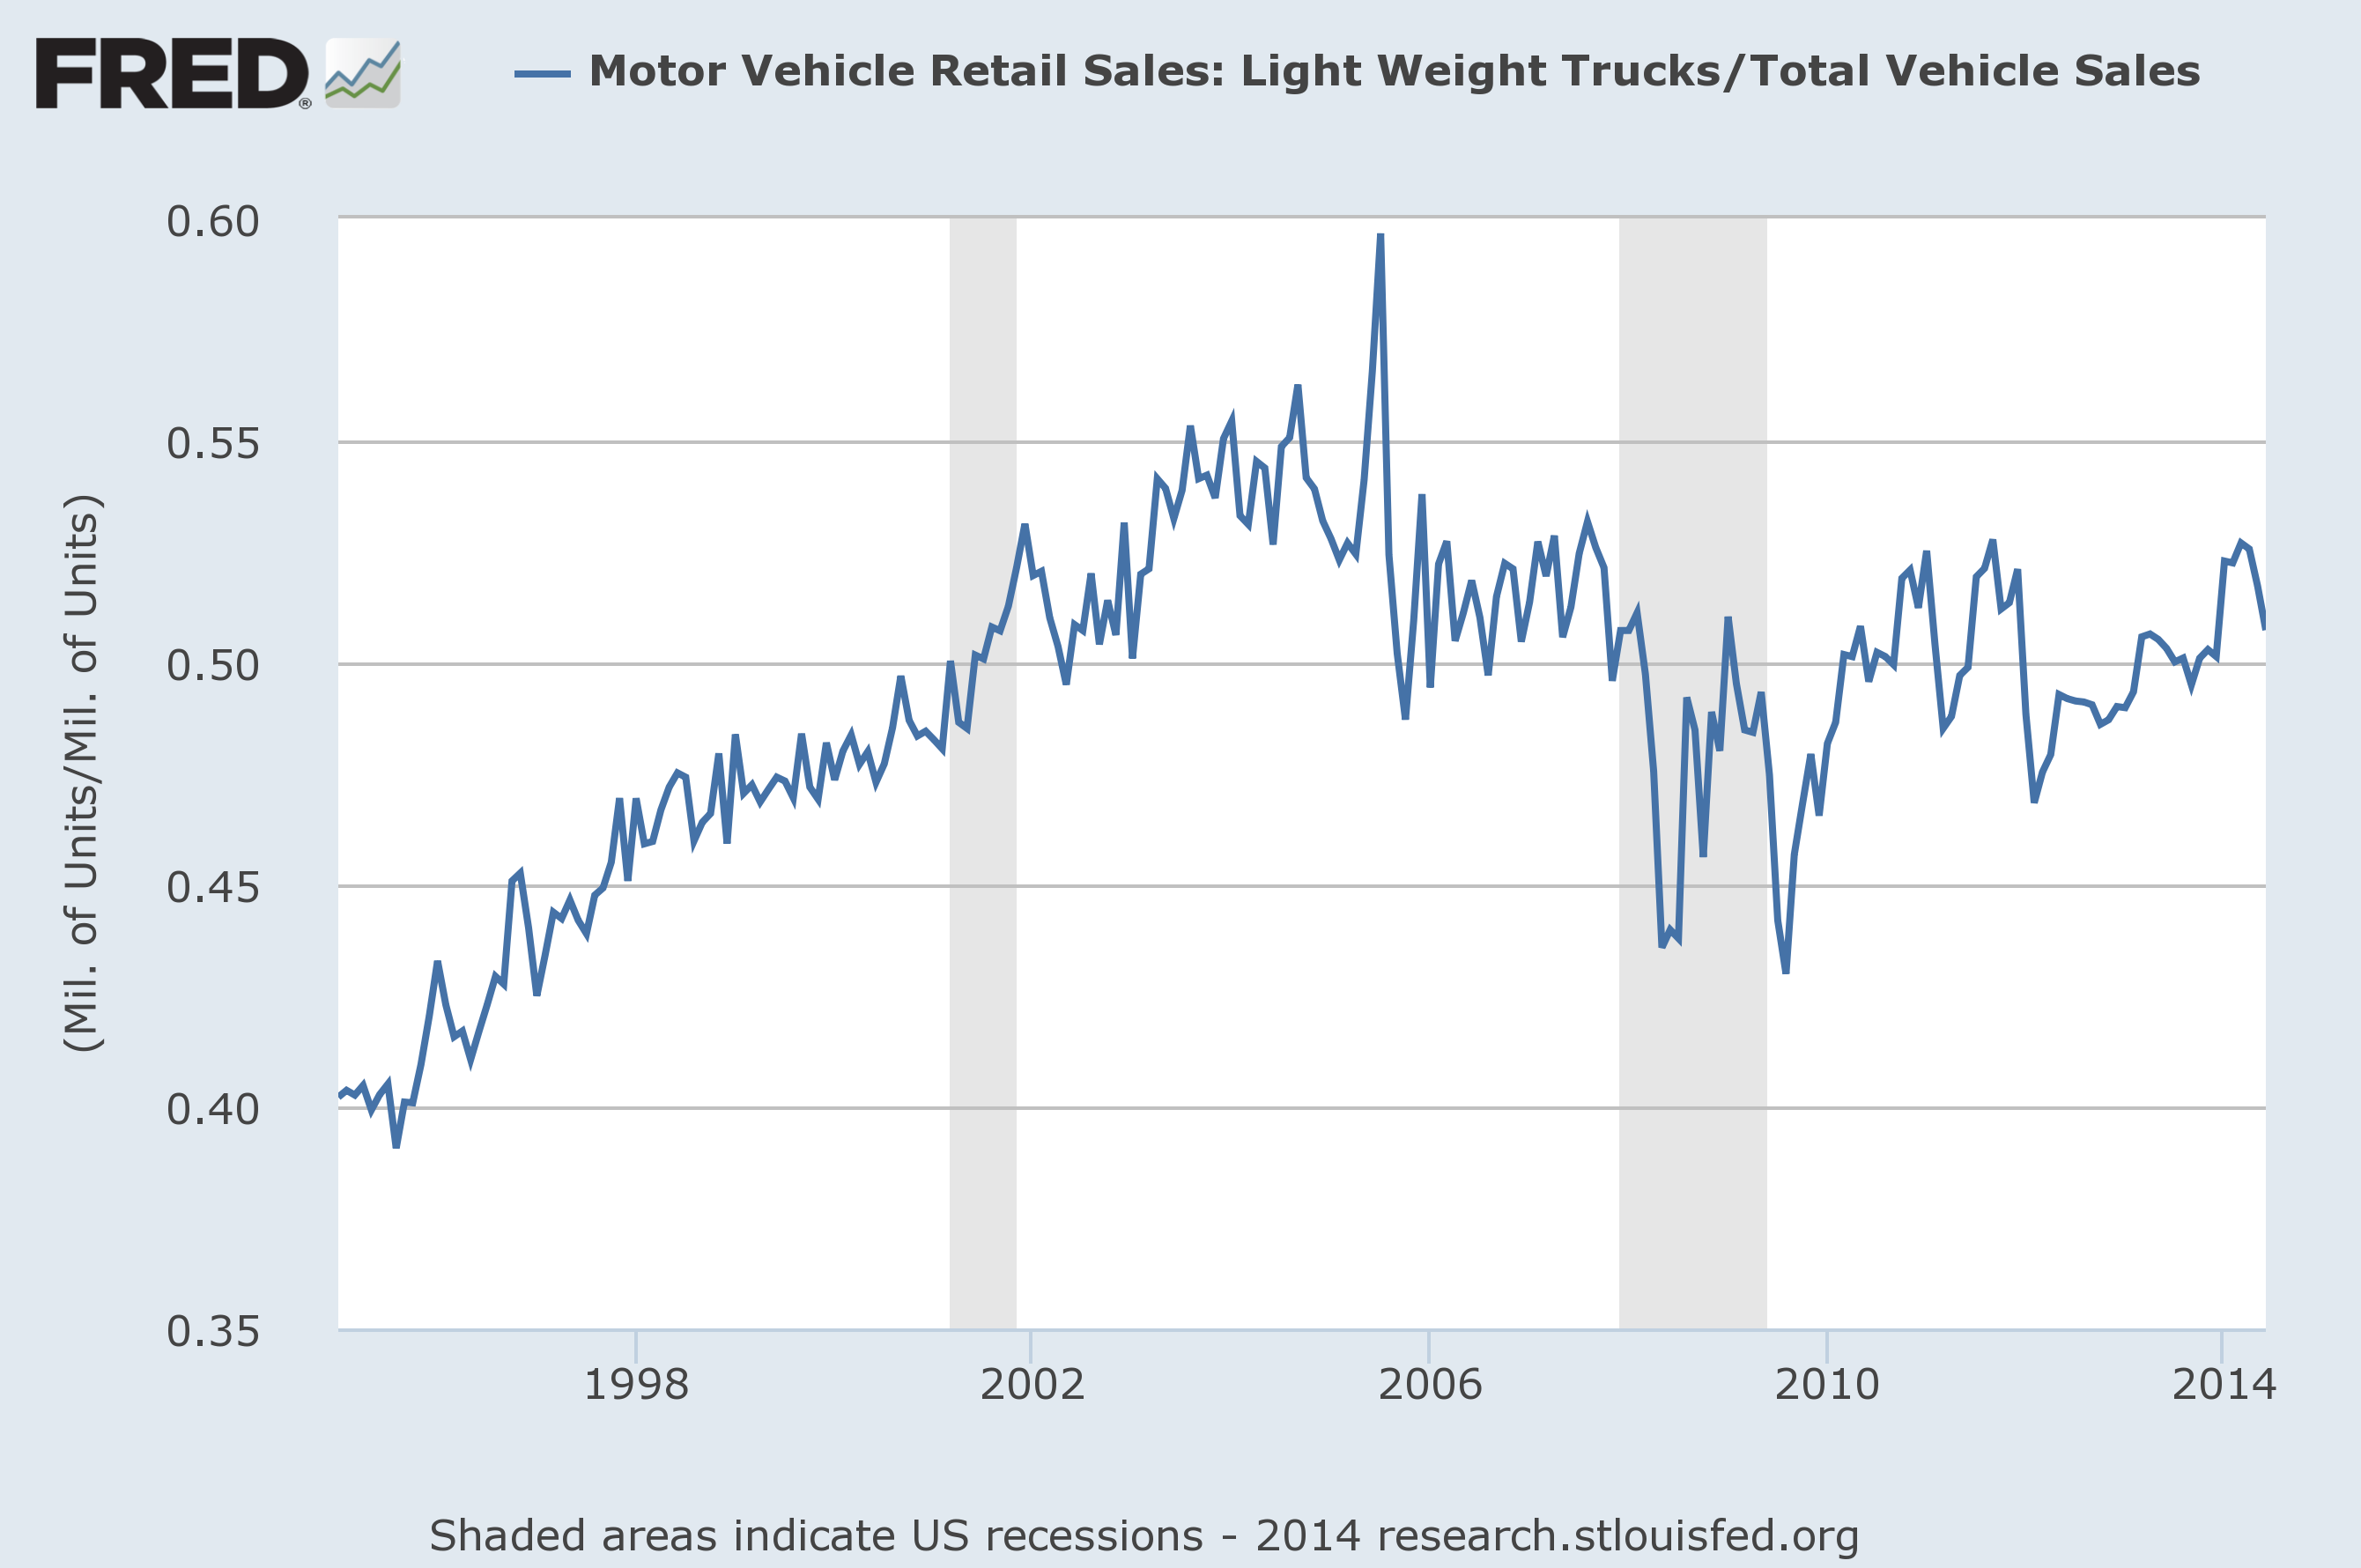 Truck sales as percentage of total sales